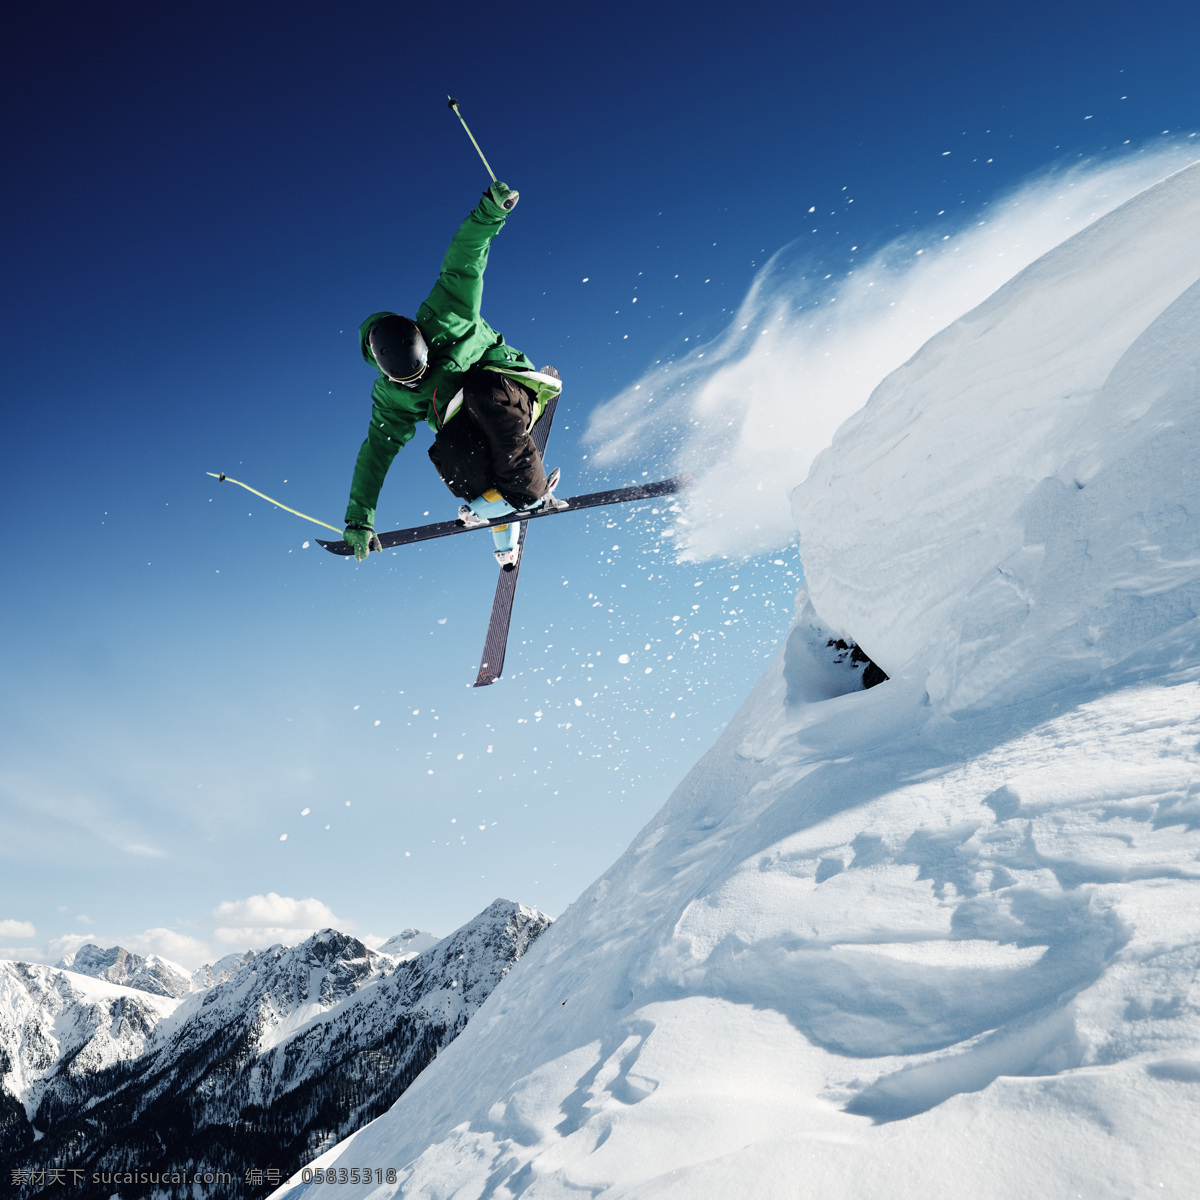 跳 起来 滑雪 运动员 滑雪运动员 滑雪场风景 雪山 雪地风景 美丽雪景 体育运动 男人 生活百科 蓝色